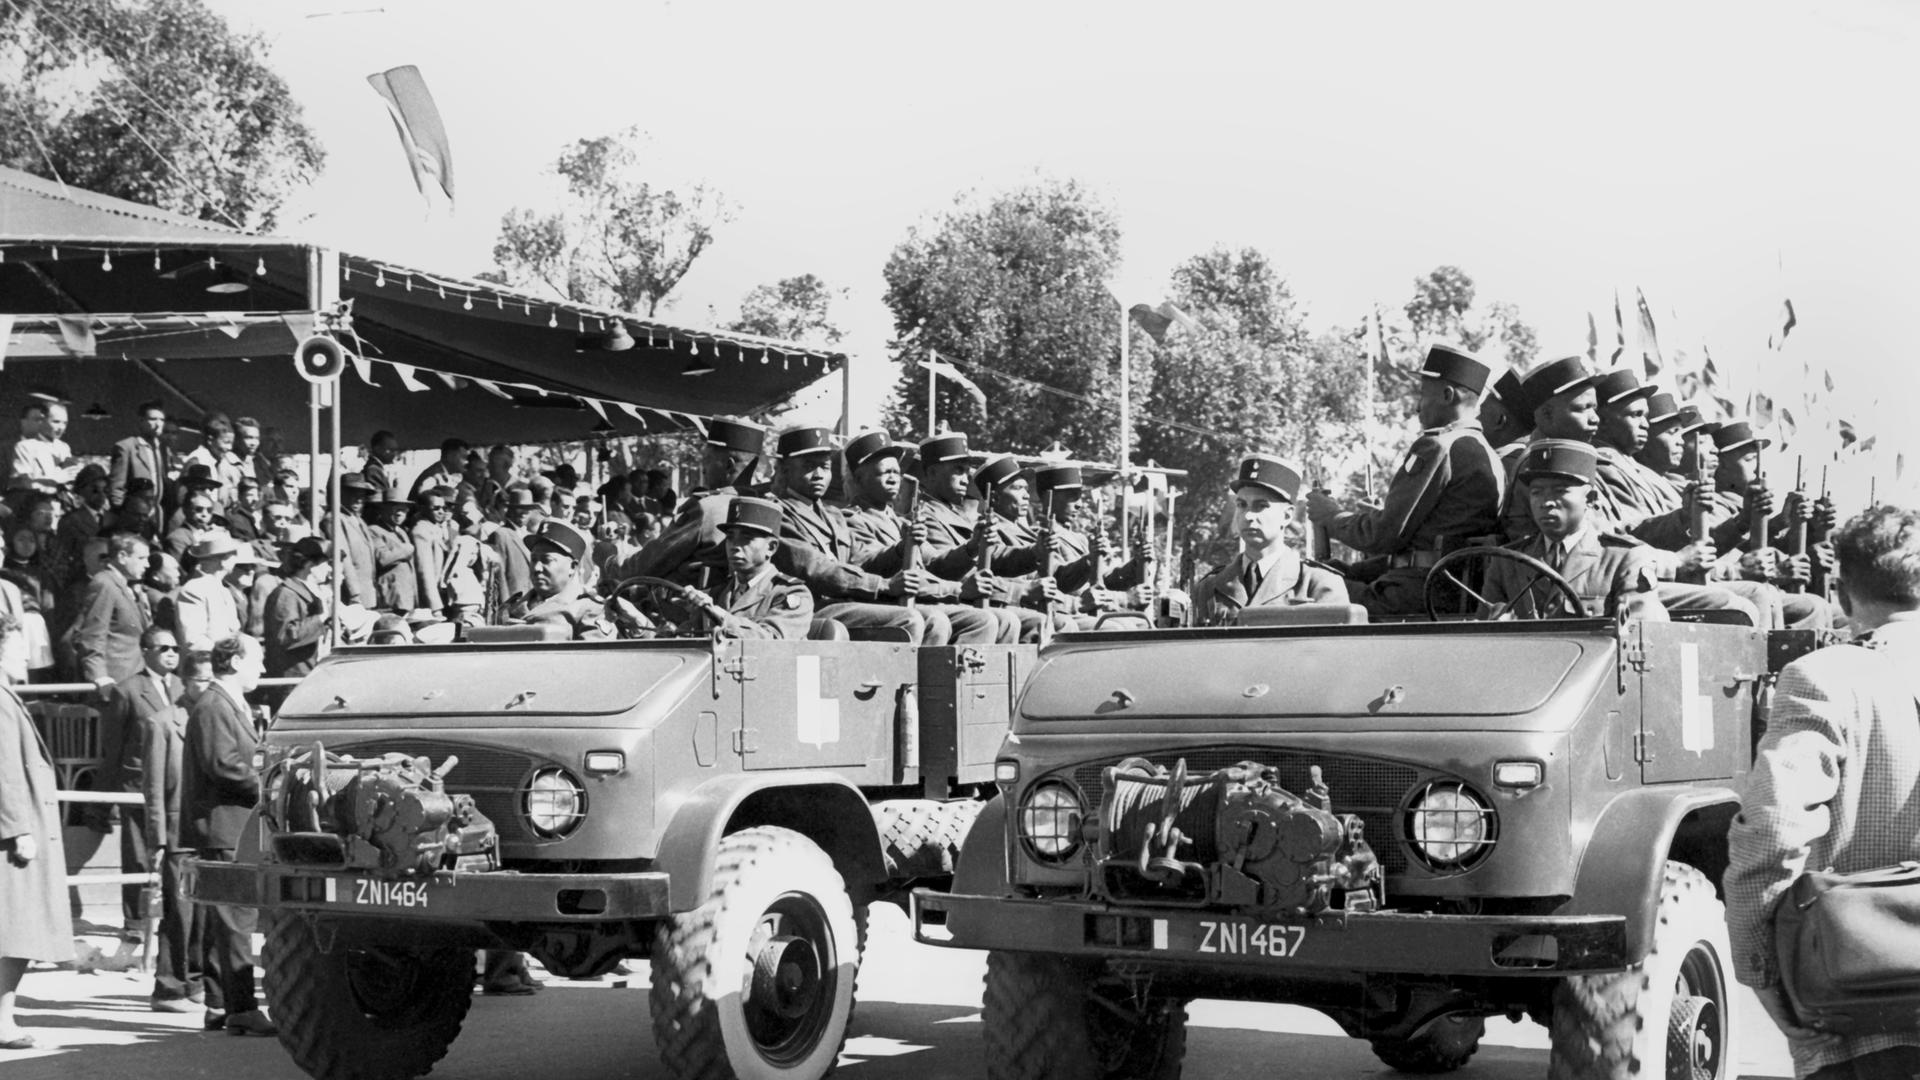 Militärparade anlässlich der Unabhängigkeitsfeier in Antananariv, Madagaskar im Juni 1960. Am 26 Juni 1960 erhielt die ehemalige französische Kolonie Madagaskar die Unabhängigkeit